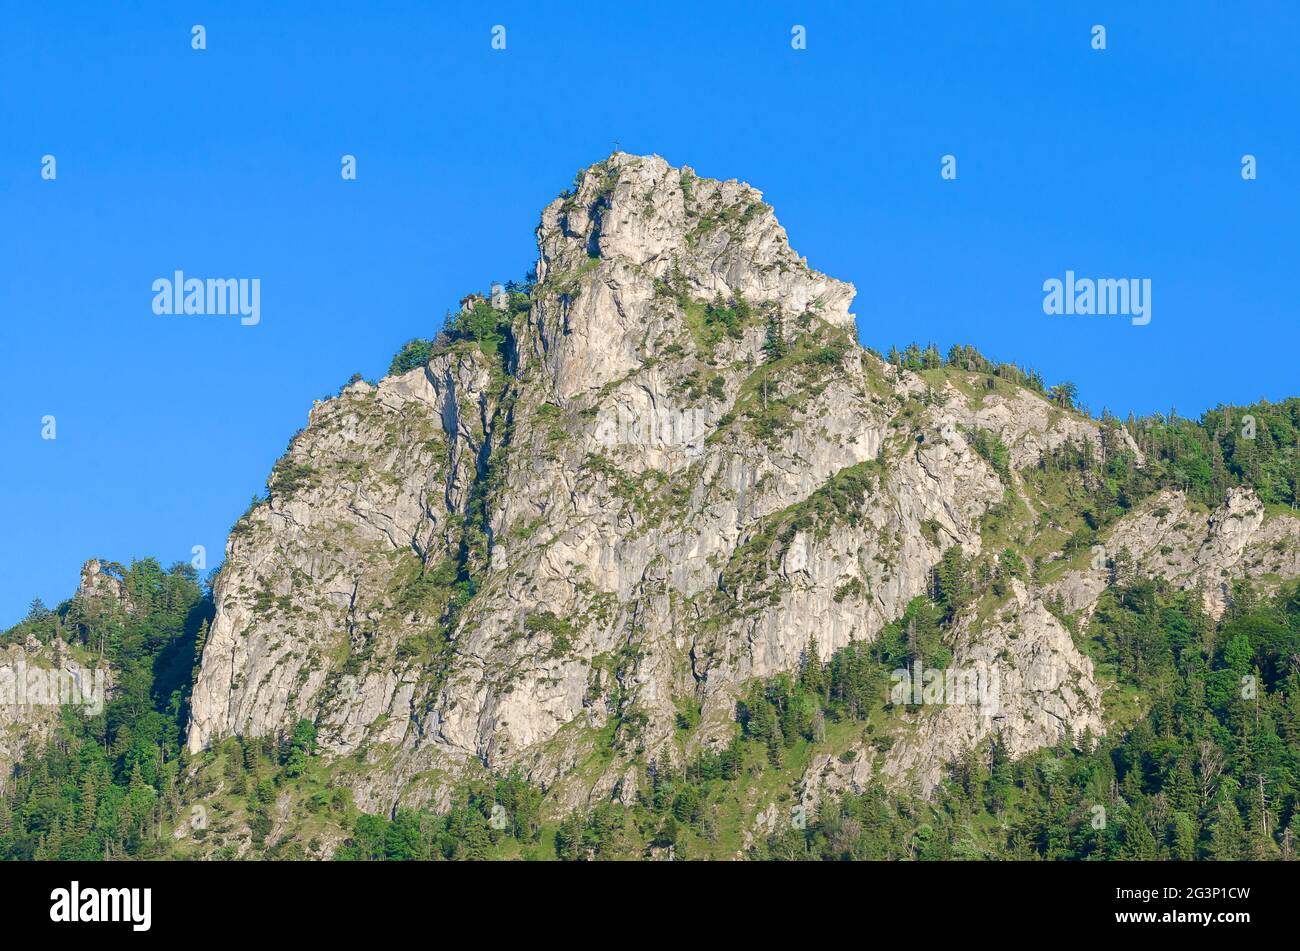 Formazione rocciosa frastagliata Nockstein a Salisburgo, Austria, Europa. Appartiene a Gaisberg, Hausberg di Salisburgo, ai piedi delle Alpi calcaree settentrionali. Foto Stock